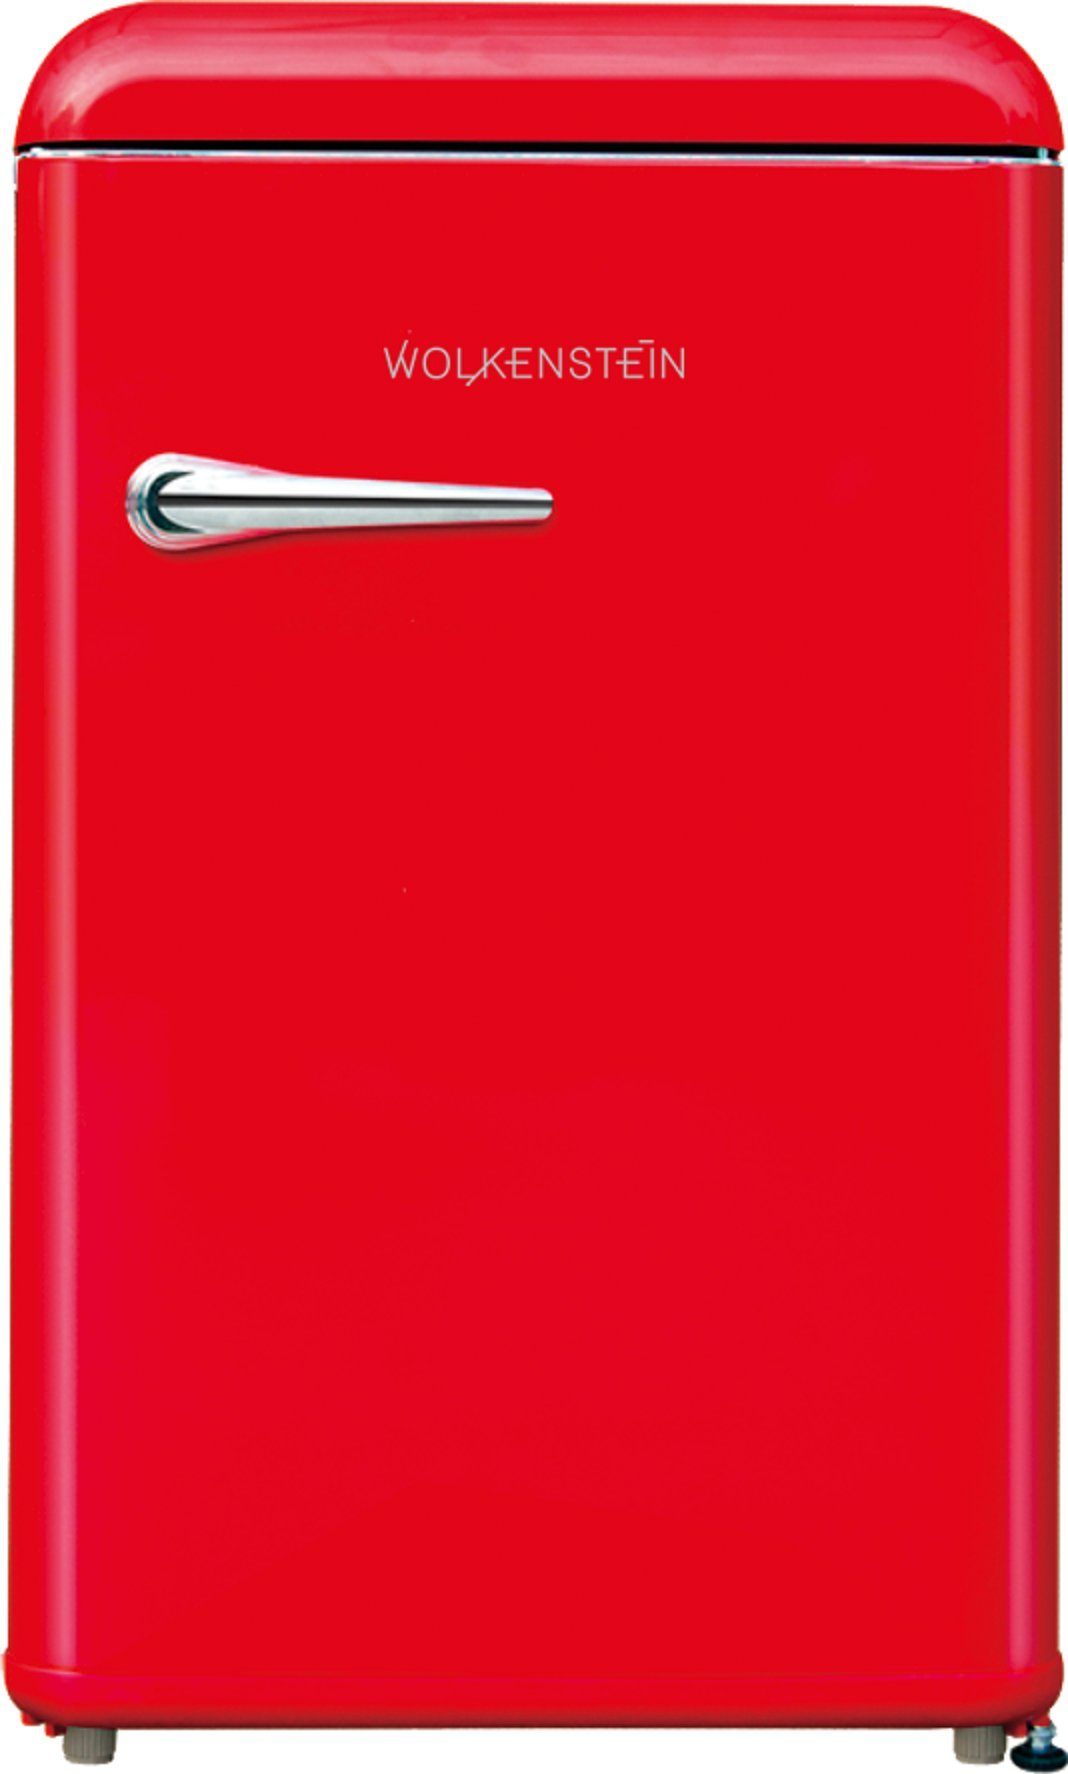 WKS125RT Rot Kühlschrank FR Wolkenstein